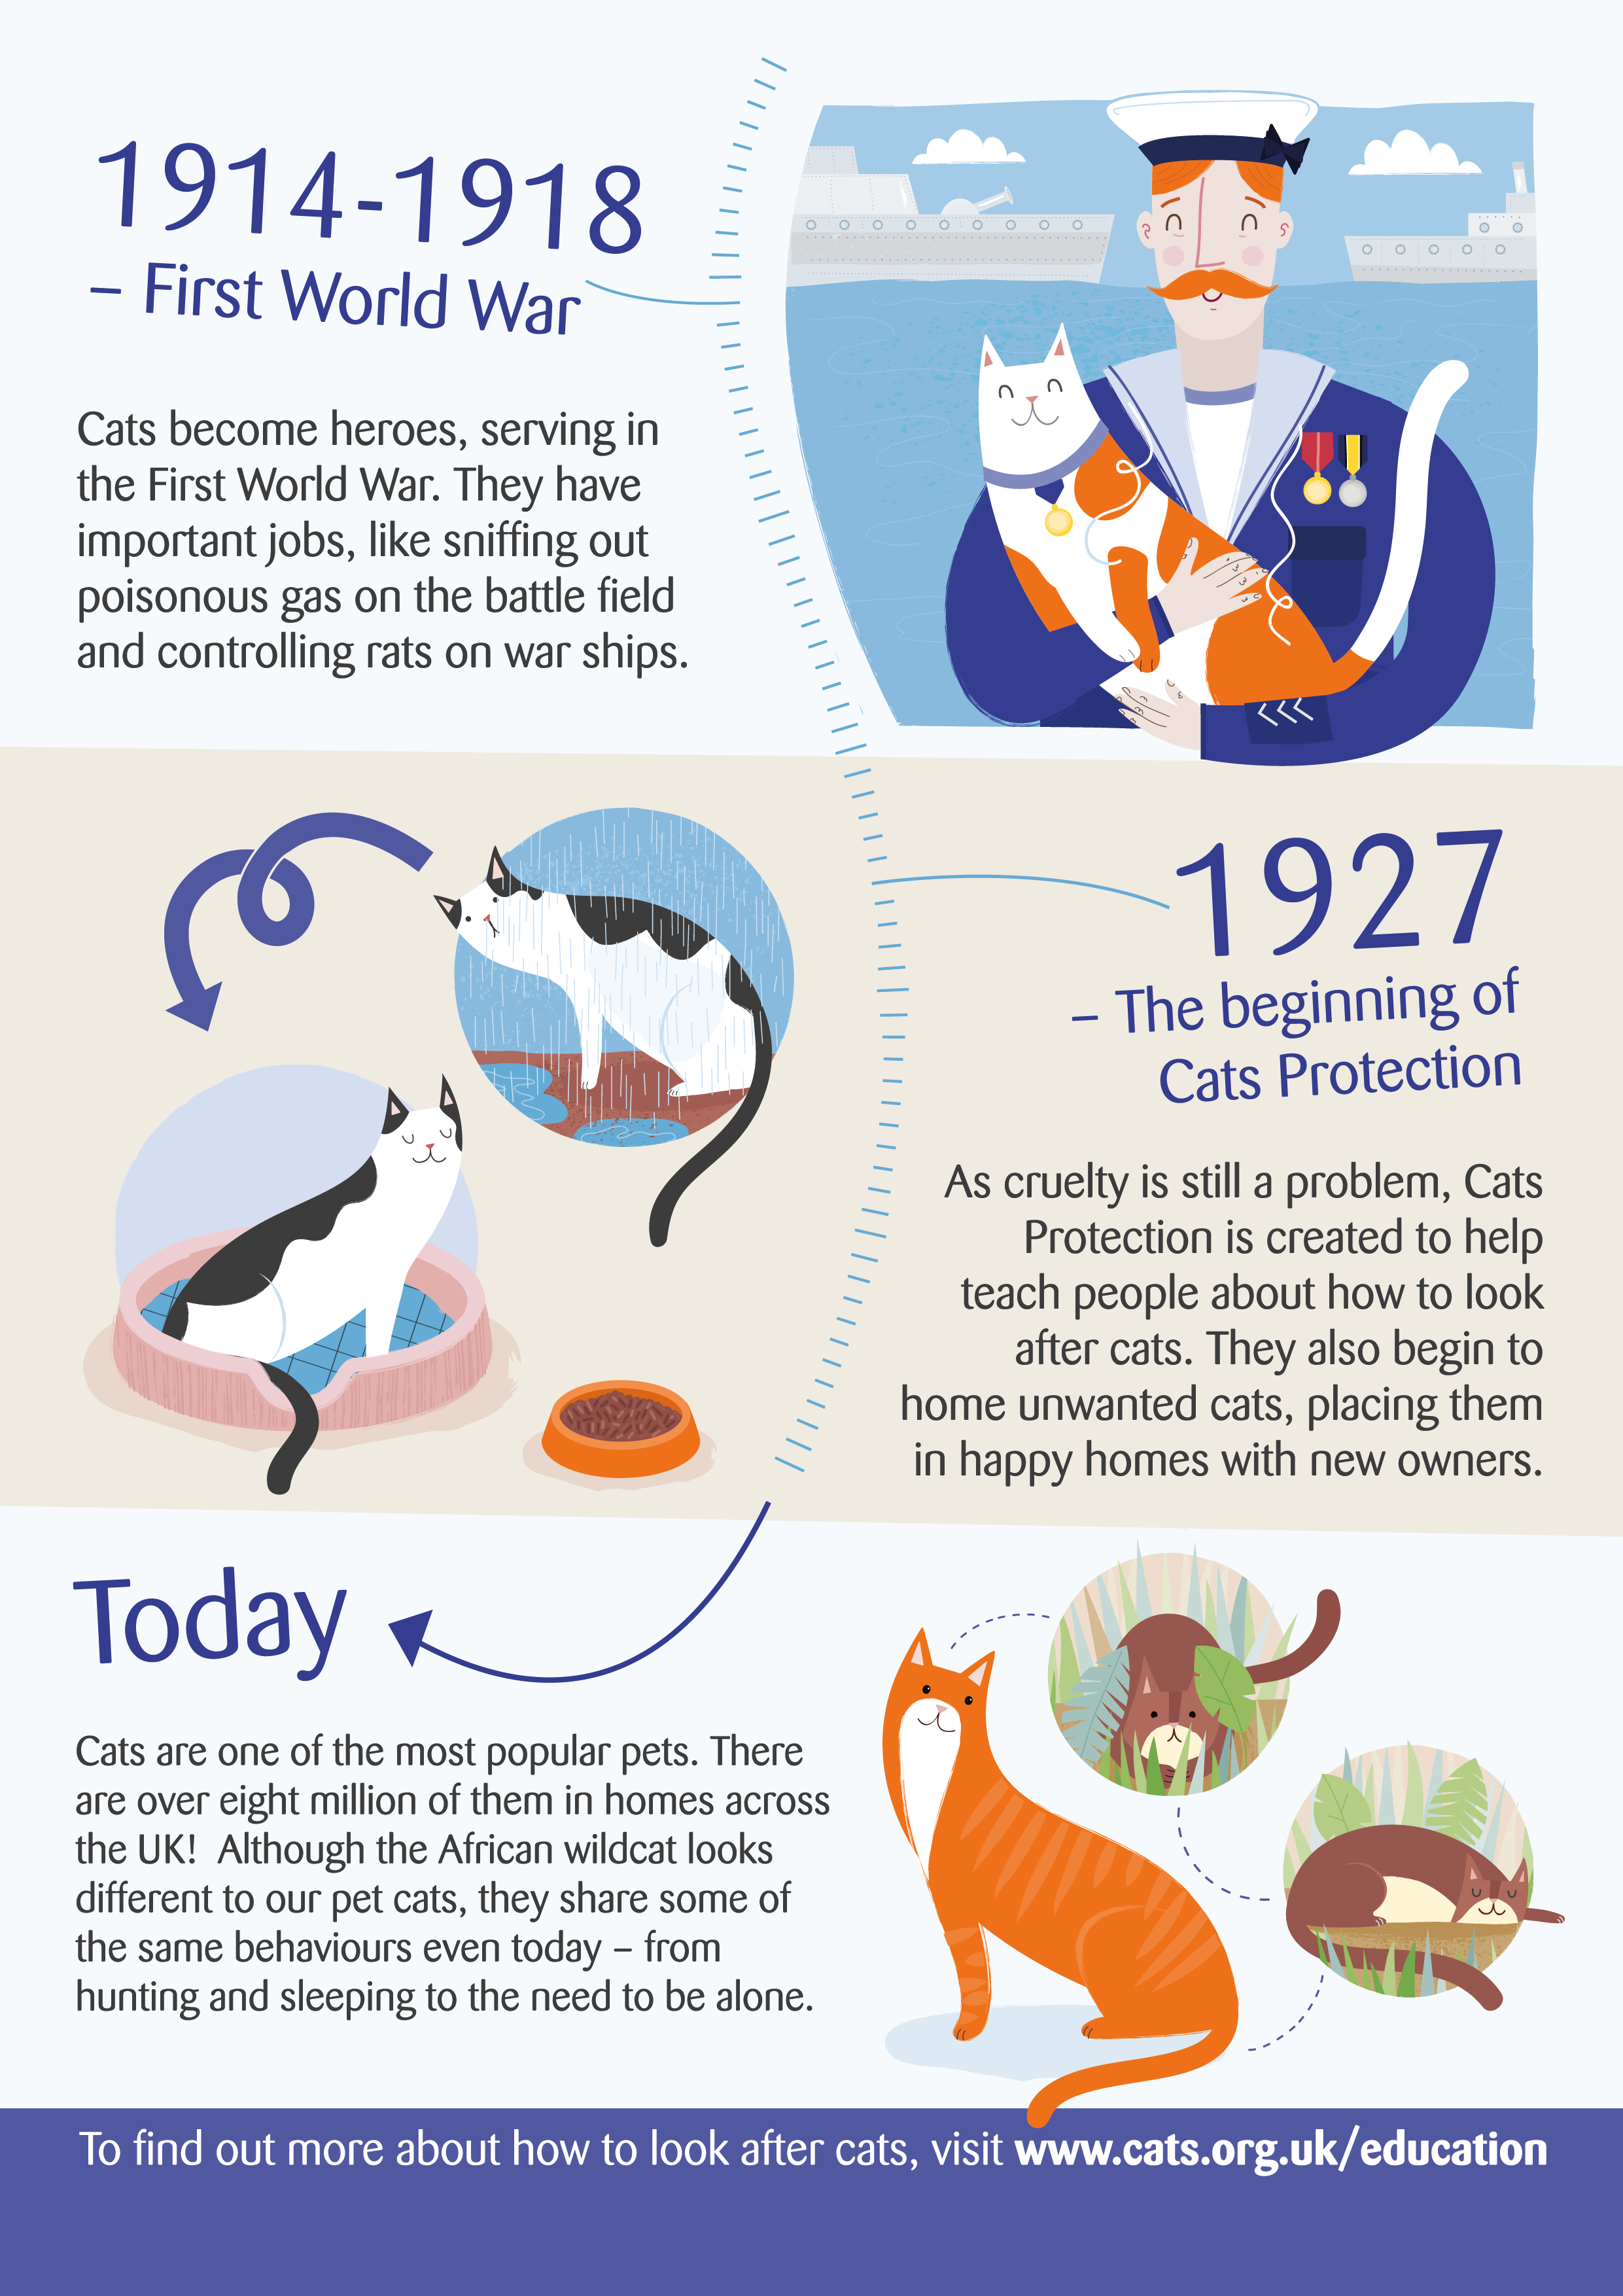 Další informace o kočkách a jejich historii.